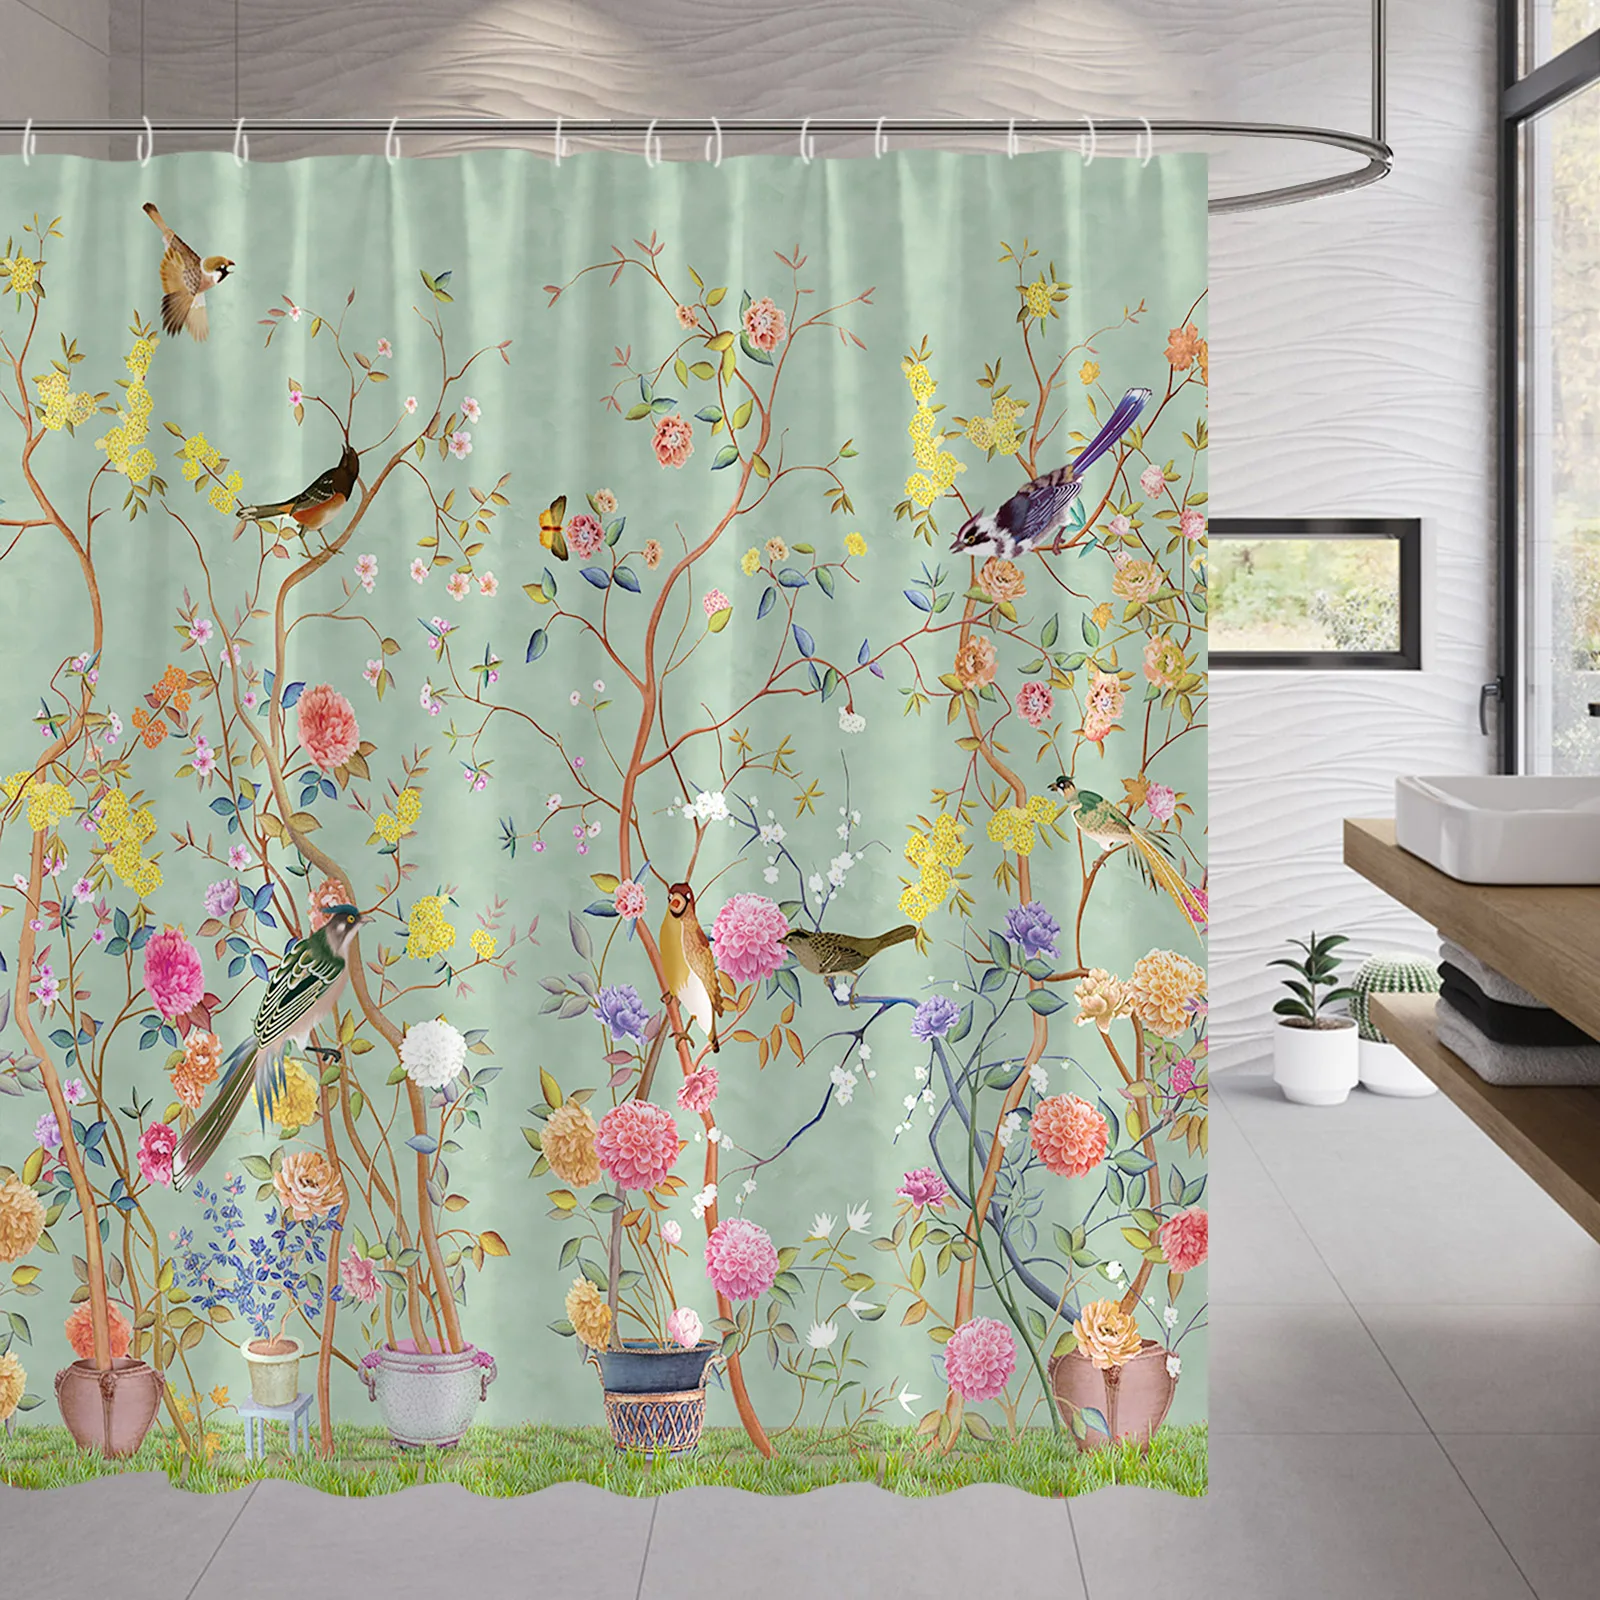 

Занавеска для душа с цветами в стиле ретро, Весенняя Цветочная ветка с птицами, деревьями, китайский ландшафт, ручная роспись, тканевый комплект для декора ванной комнаты